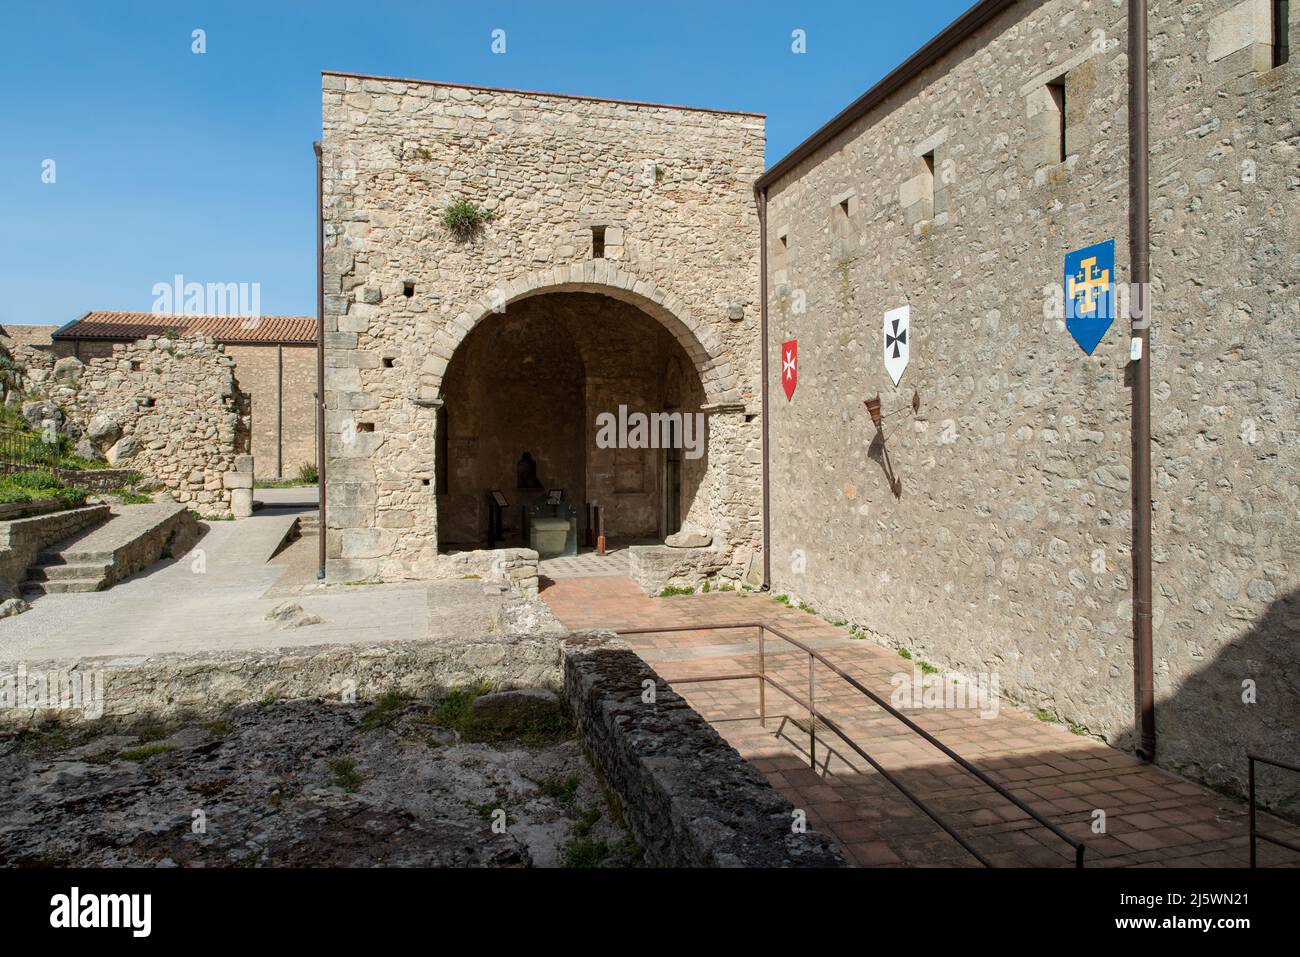 castello medievale - Paese di Montalbano Elicona, Provincia di Messina, borgo dei borghi 2015, splendido borgo medievale molto caratteristico Stockfoto